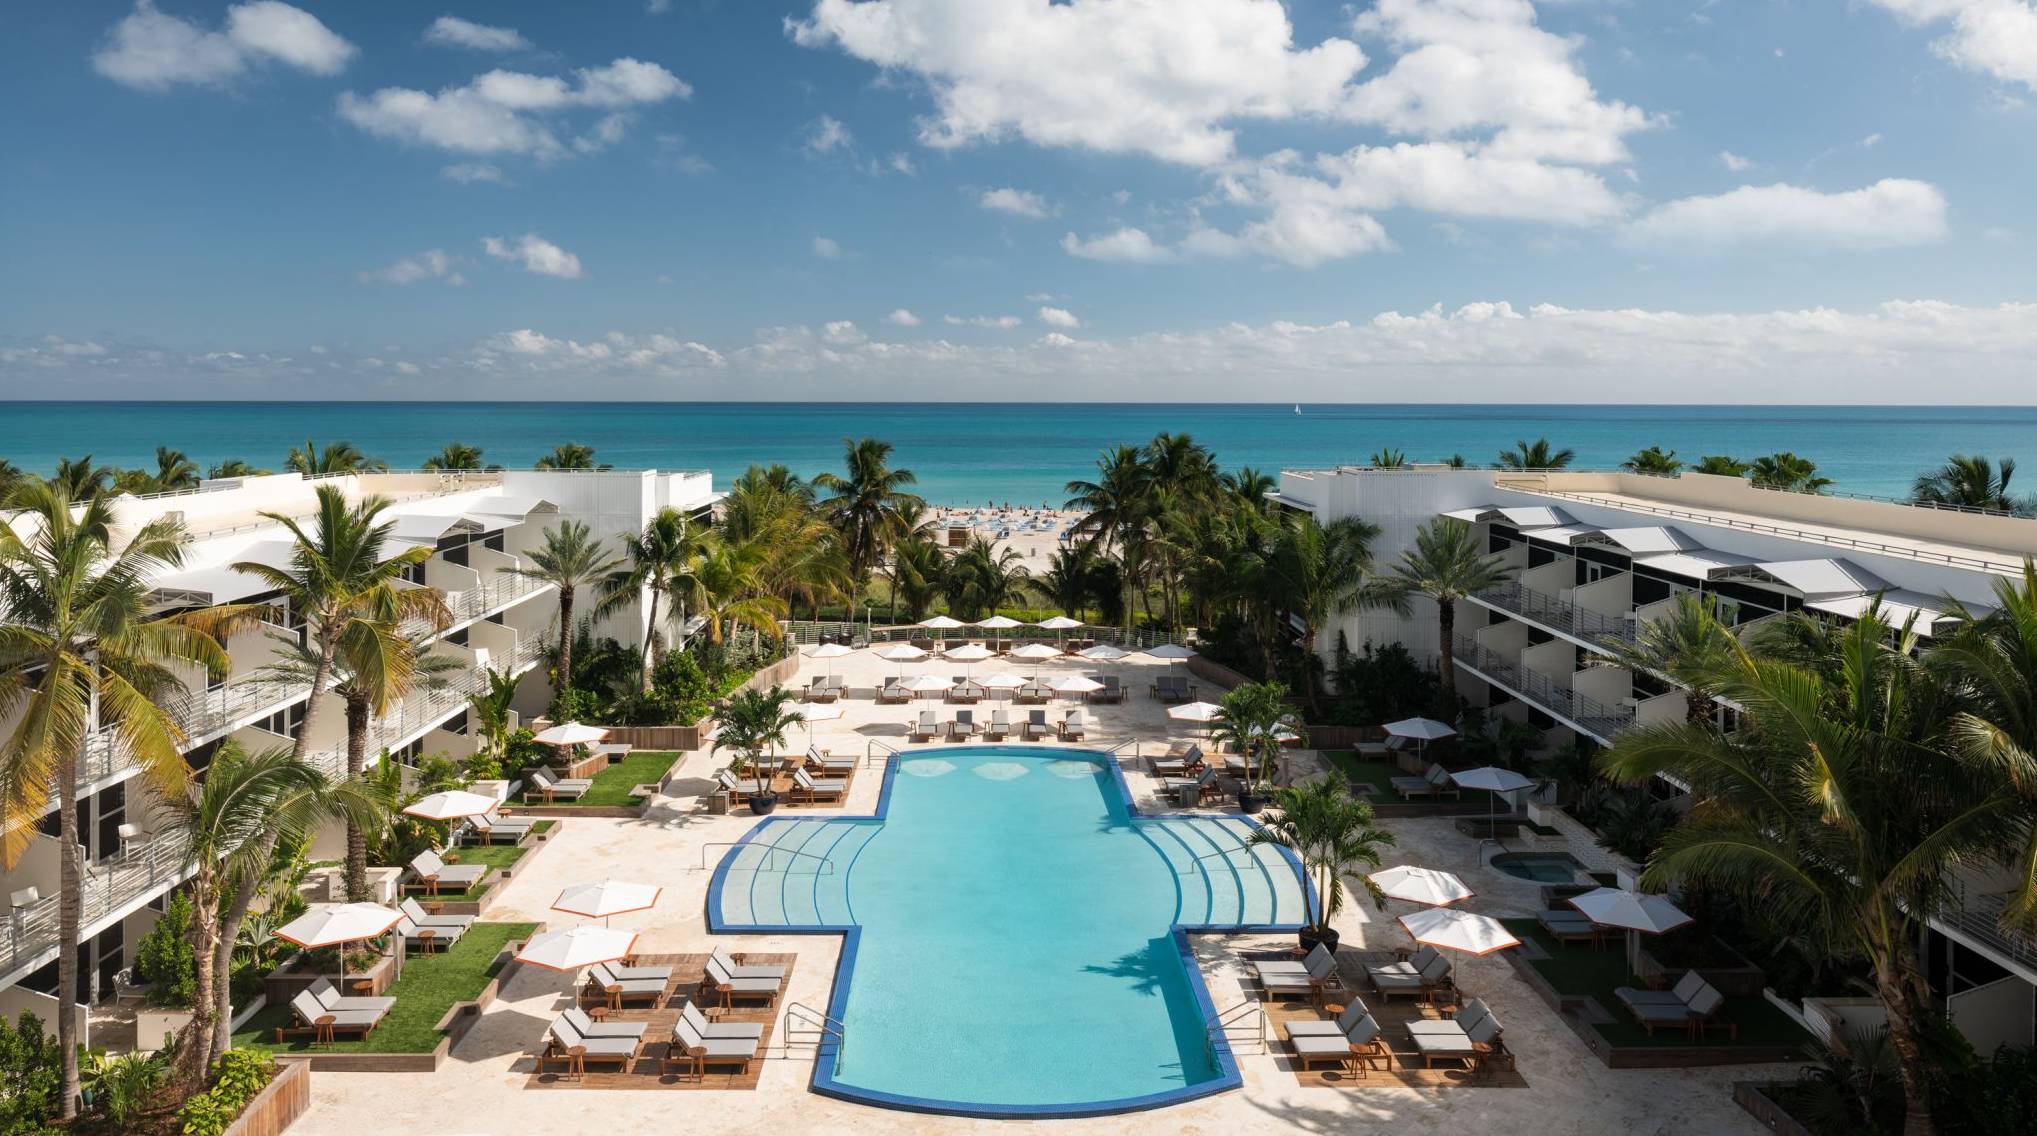 LuxeGetaways - Luxury Travel - Luxury Travel Magazine - Luxe Getaways - Luxury Lifestyle - The Ritz Carlton South Beach - Miami Florida - Bonvoy - Marriott International